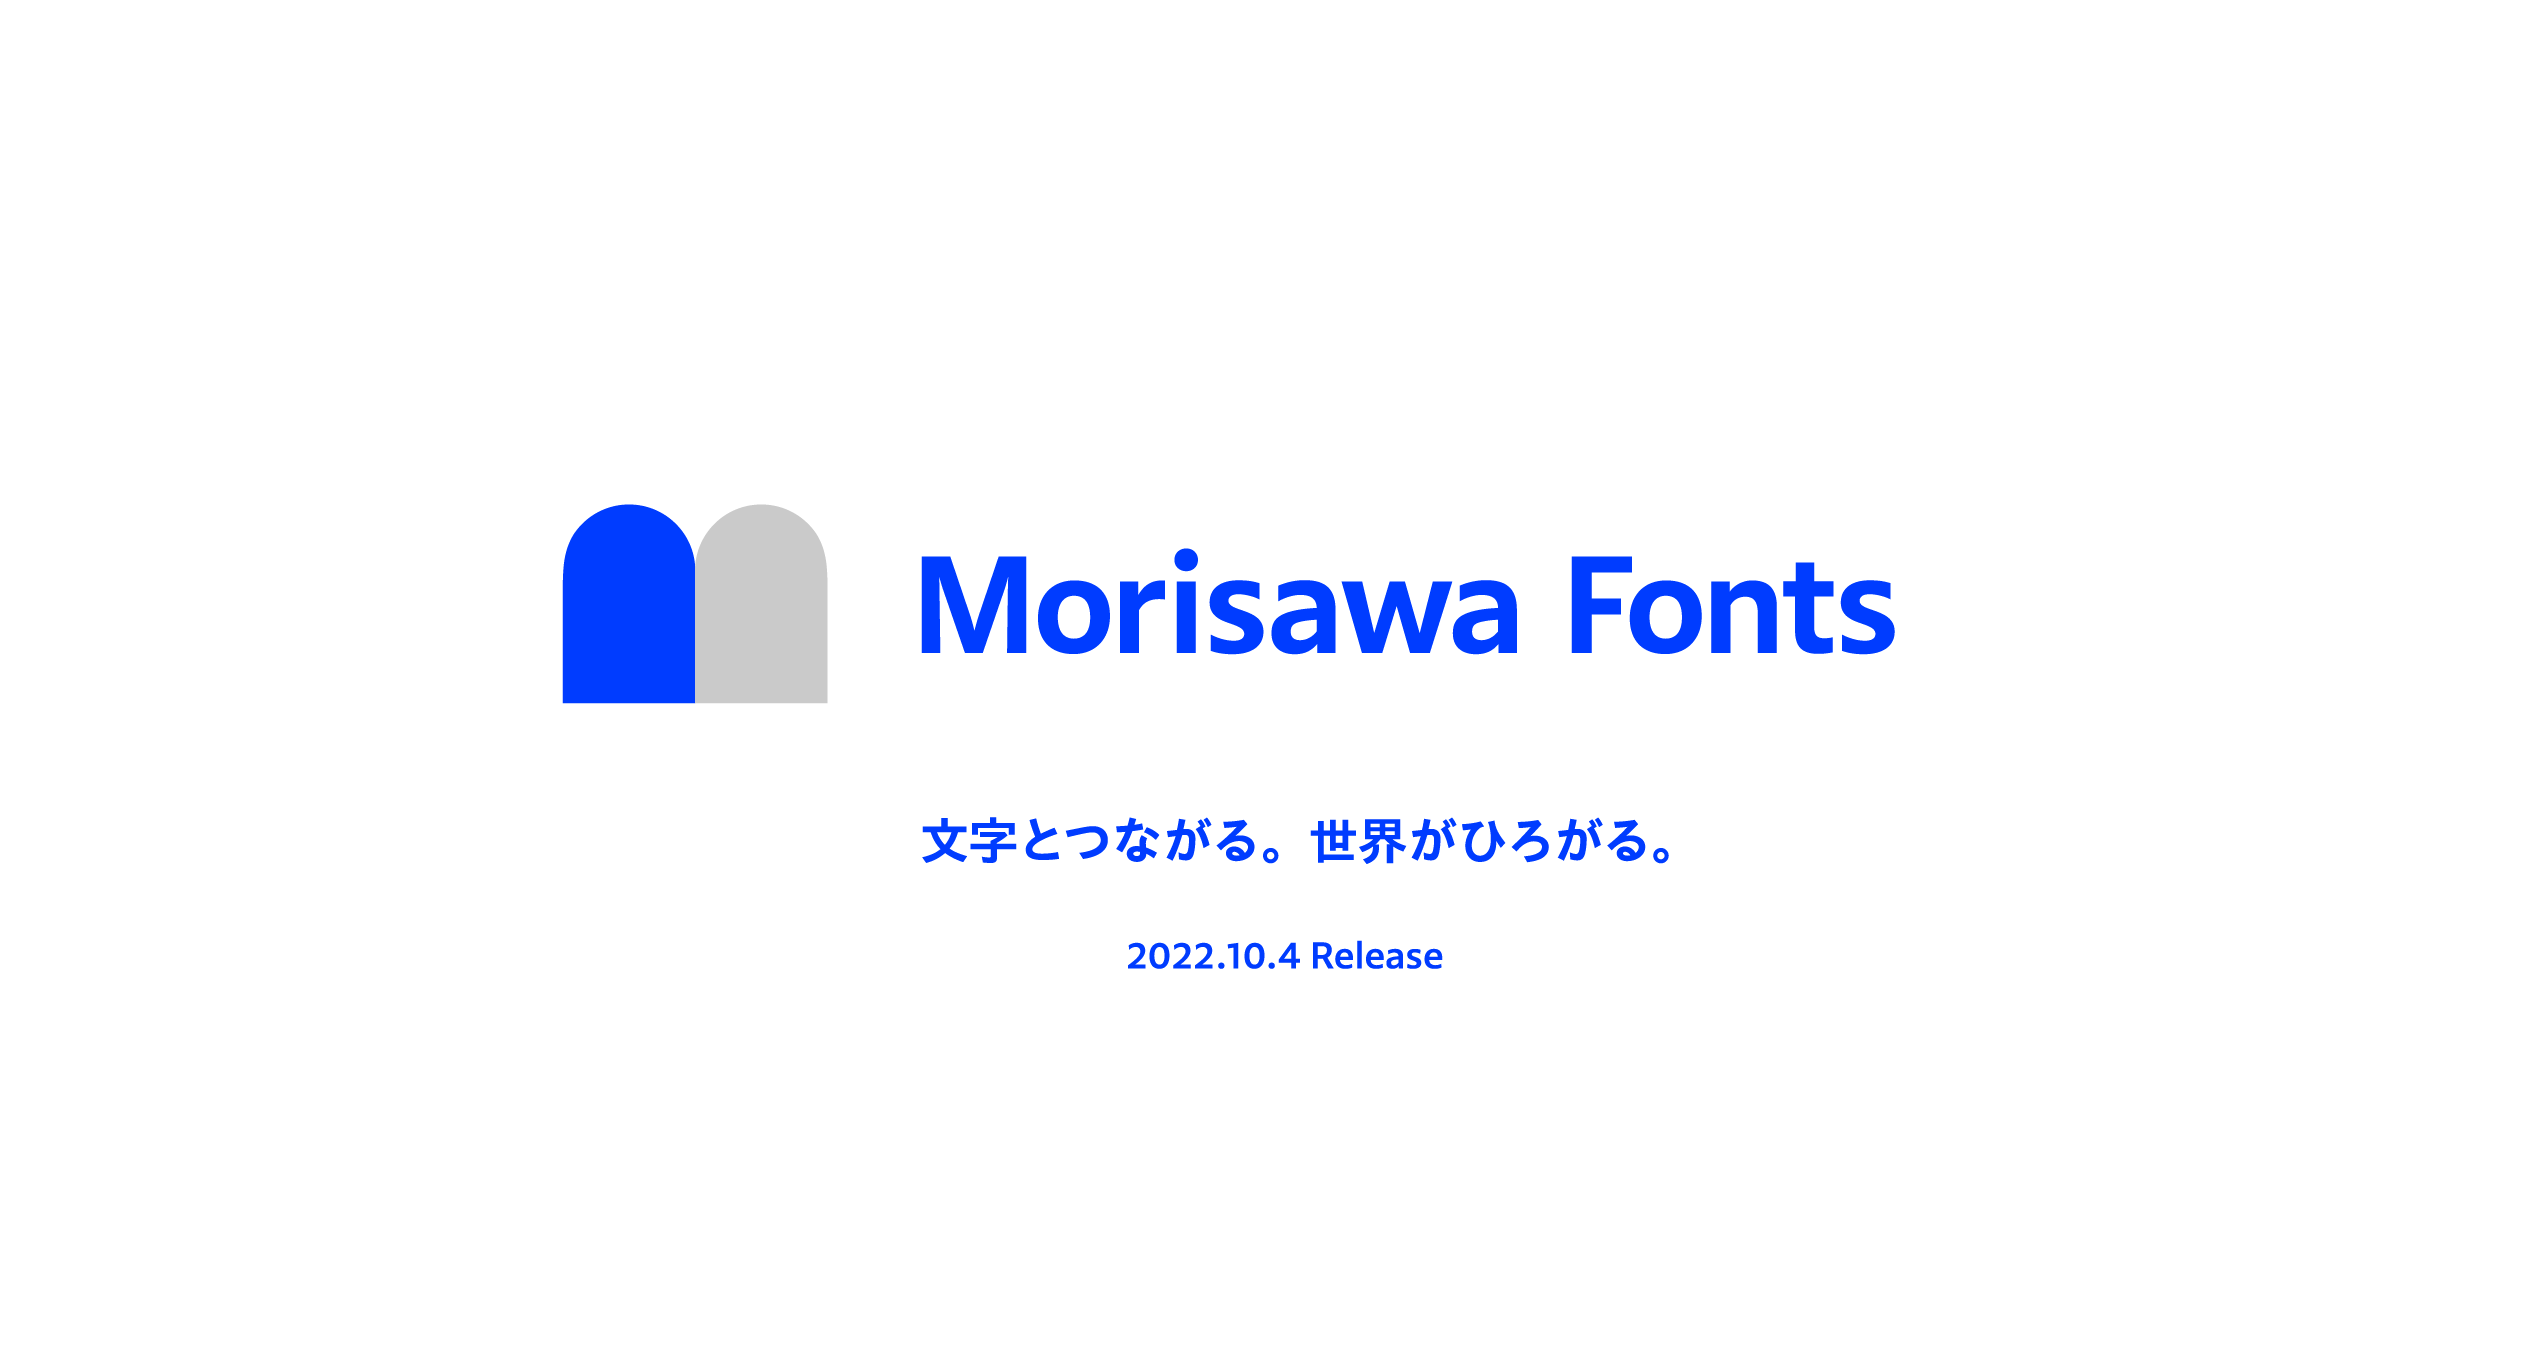 モリサワ 新たなフォントサービス「Morisawa Fonts」を発表